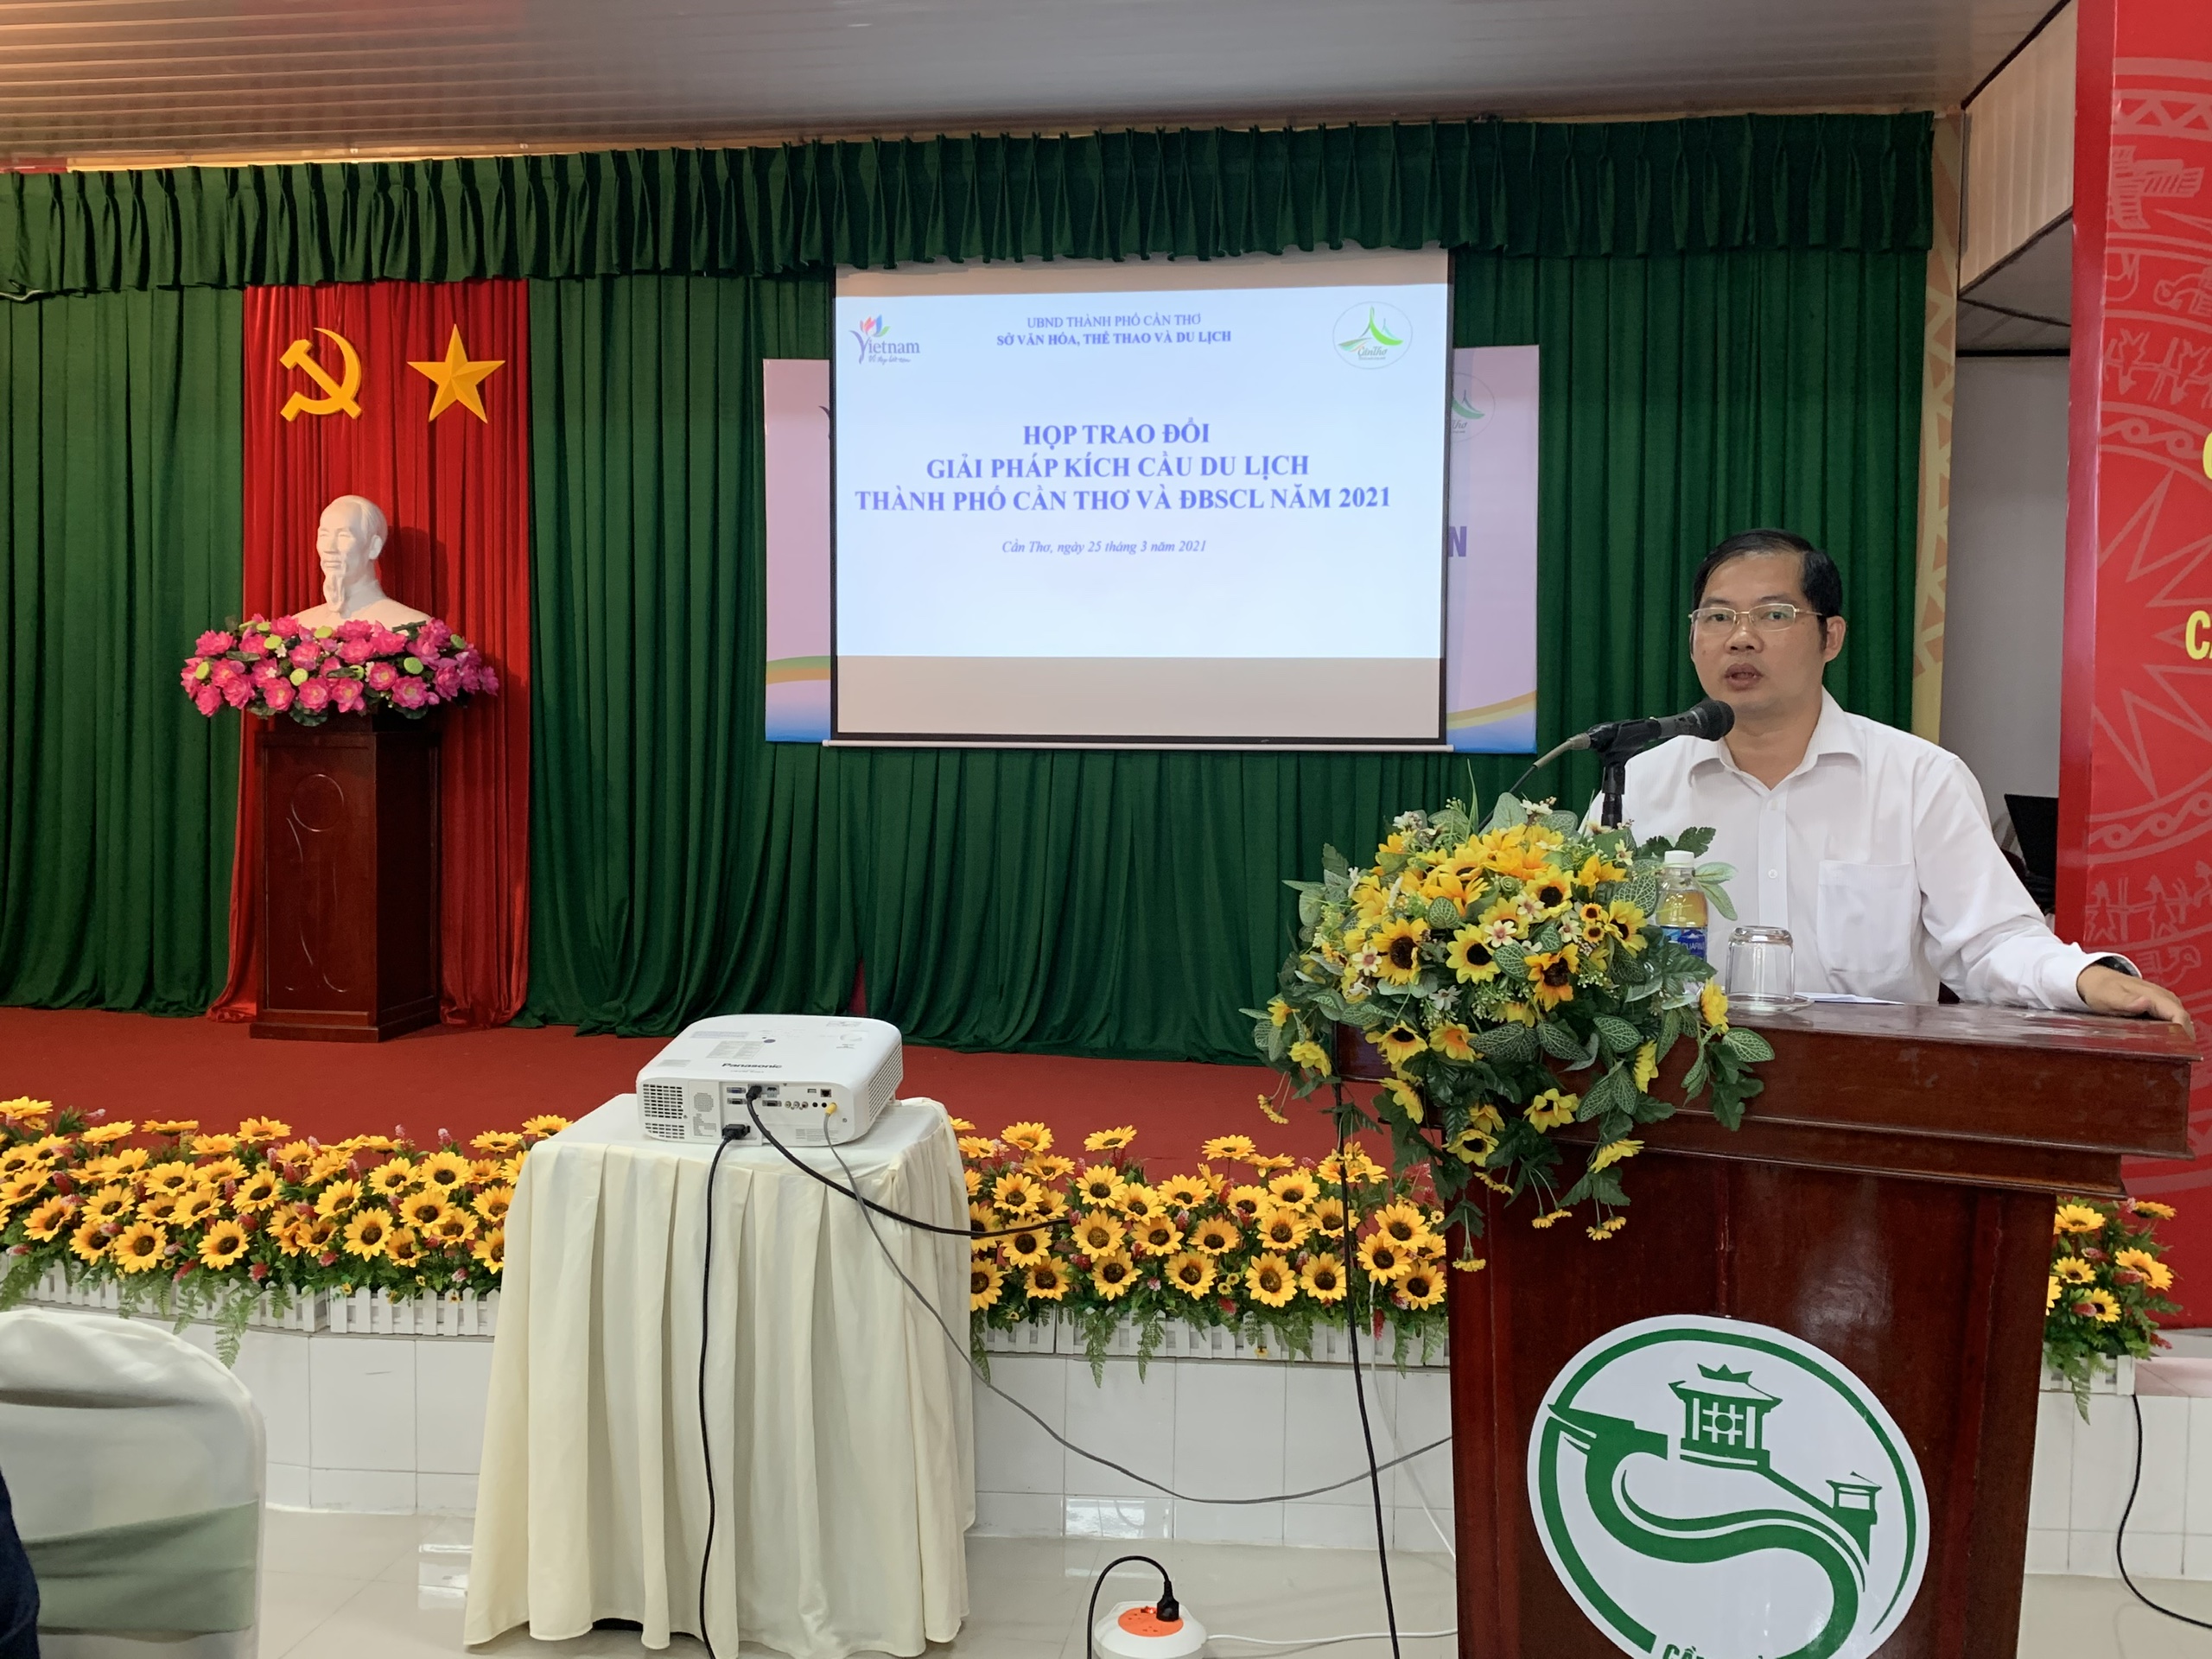 Trao đổi giải pháp kích cầu du lịch Cần Thơ và các tỉnh Đồng bằng sông Cửu Long năm 2021